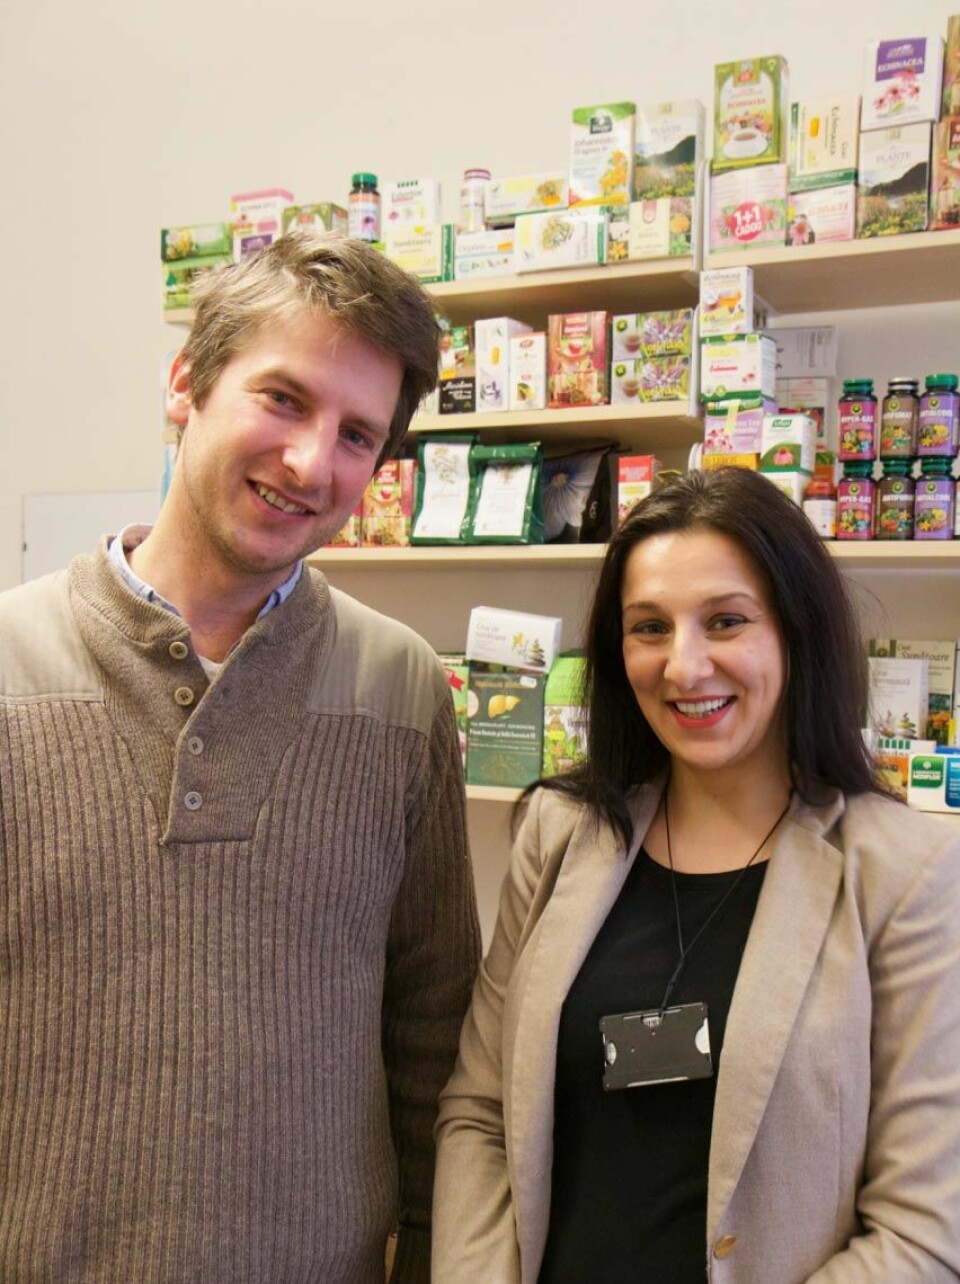 Hugo de Boer og Ancuta Cristina Raclariu har samlet johannesurt-produkter fra mange europeiske land. (Foto: Ingrid Spilde)